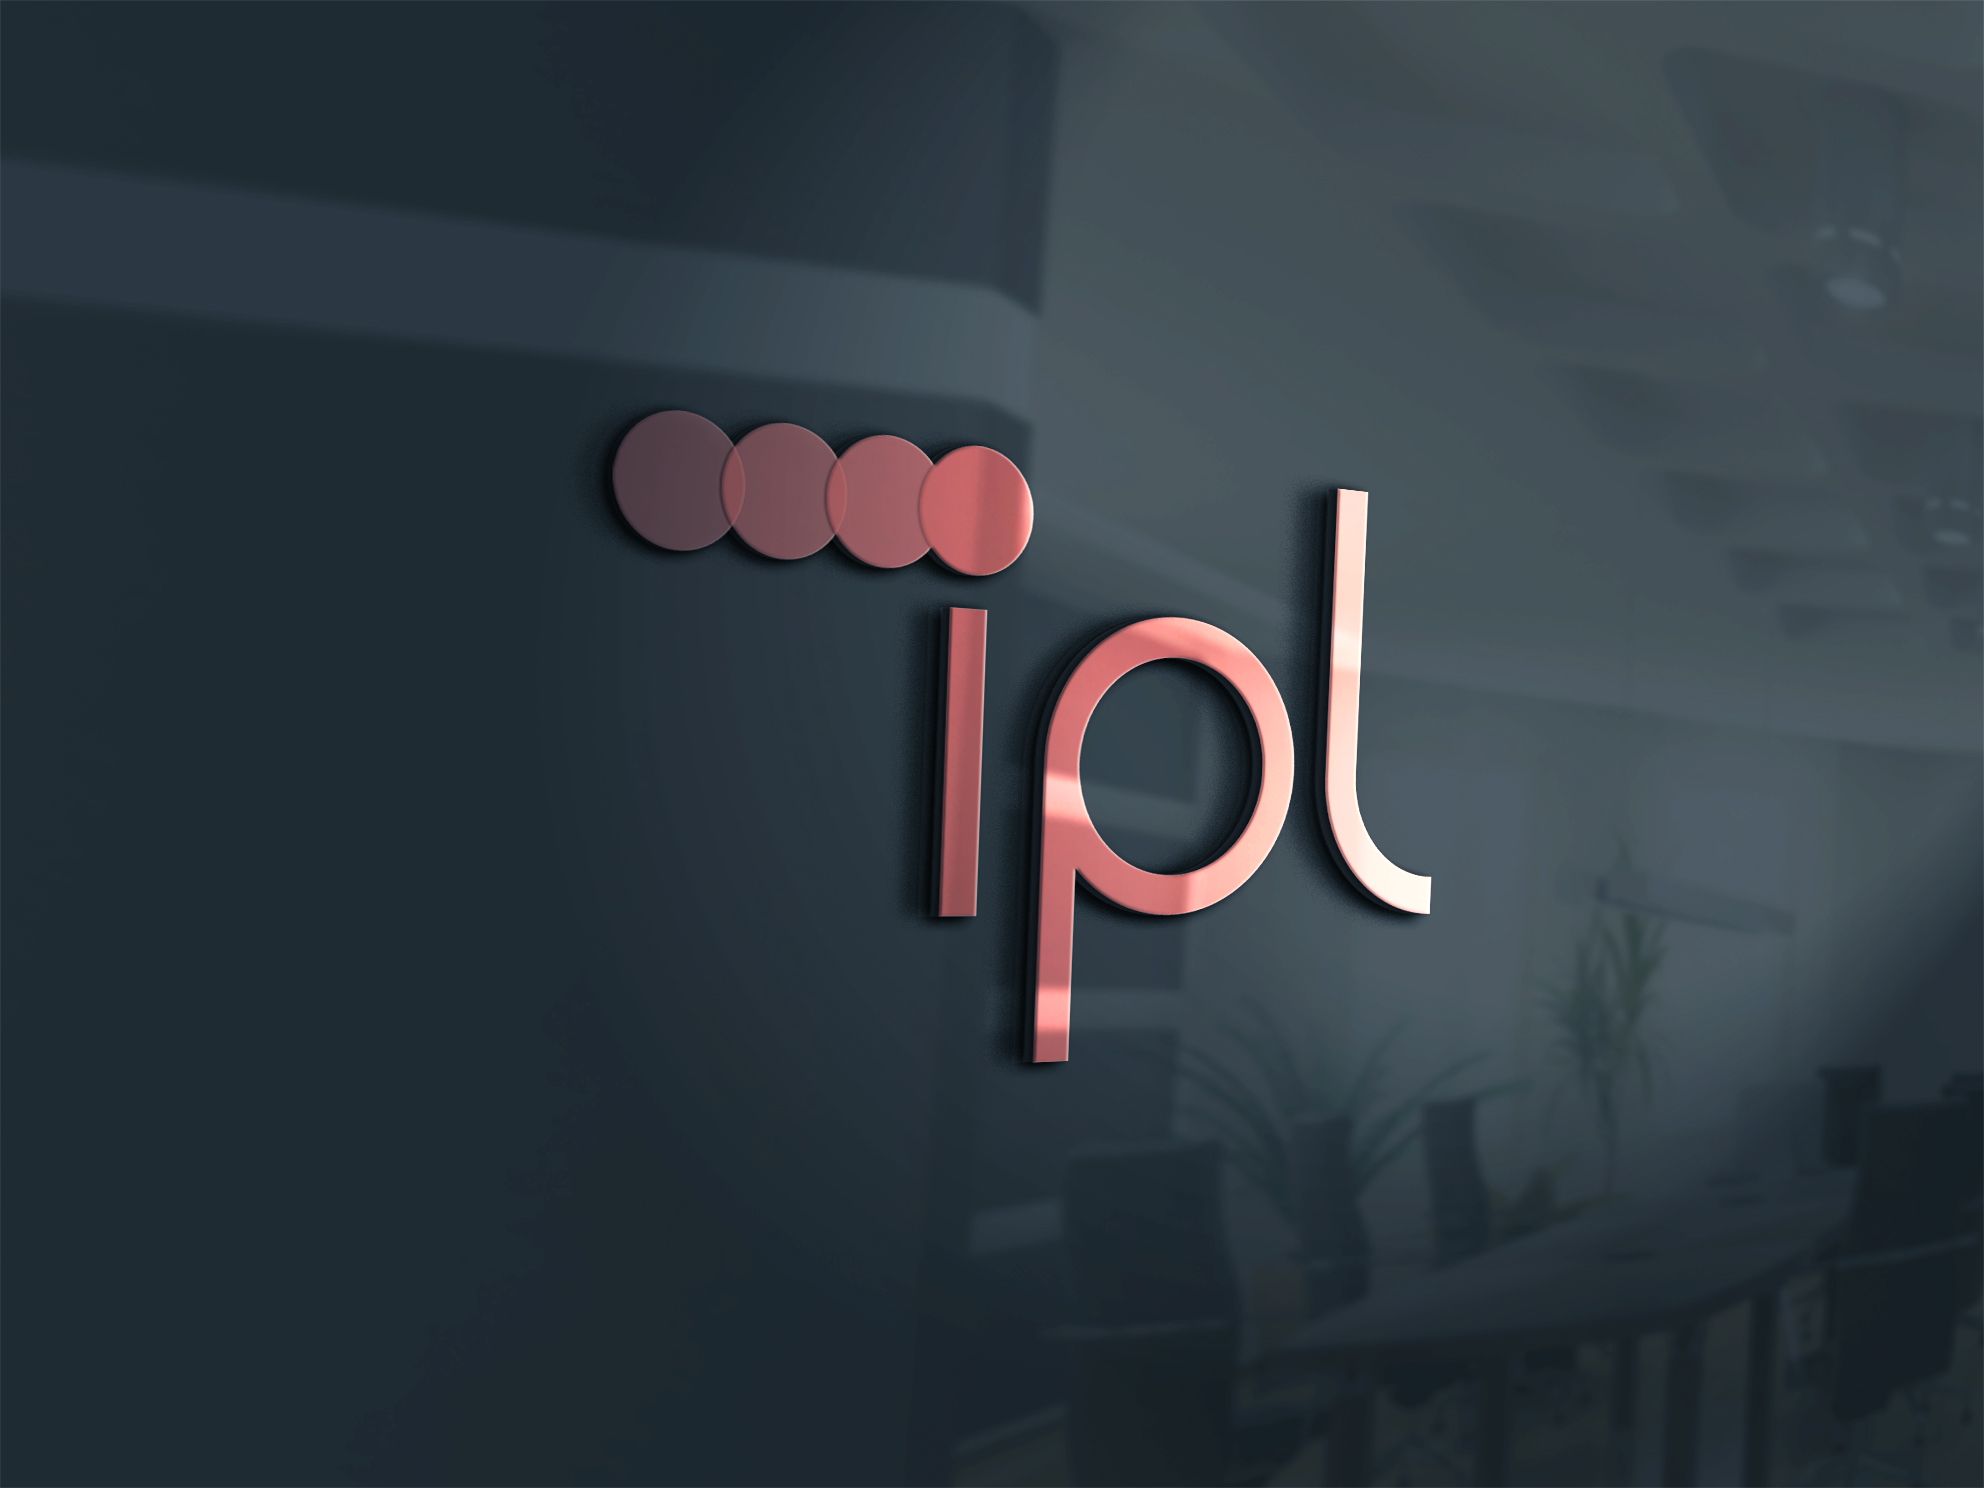 Логотип новой компаний IPL ELECTRIC  - дизайнер comicdm